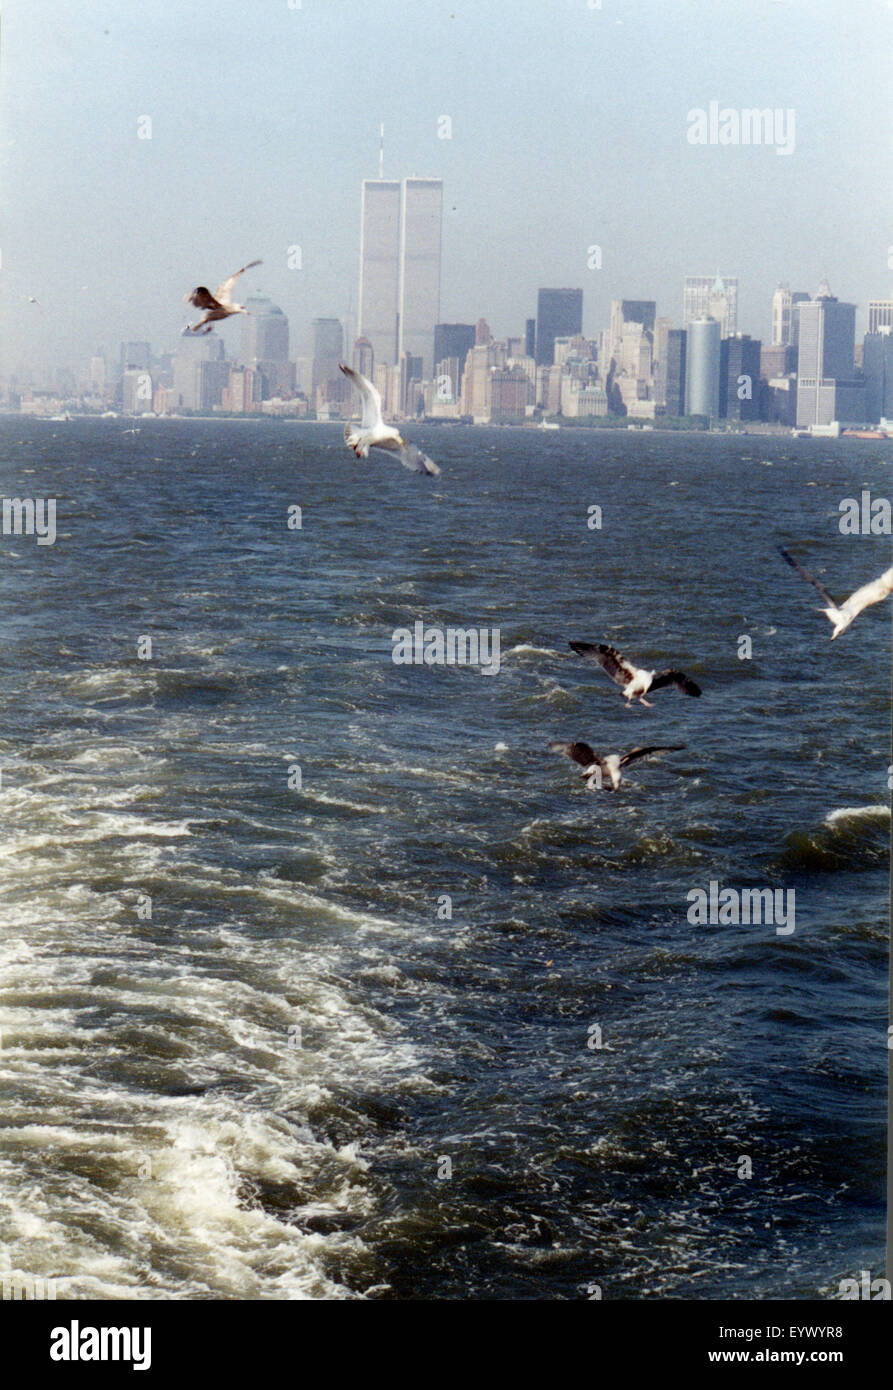 Juli 1998 - NEW YORK: die Skyline von Manhattan mit den Zwillingstürmen des World Trade Centers gesehen von der Staten Island Ferry. Stockfoto